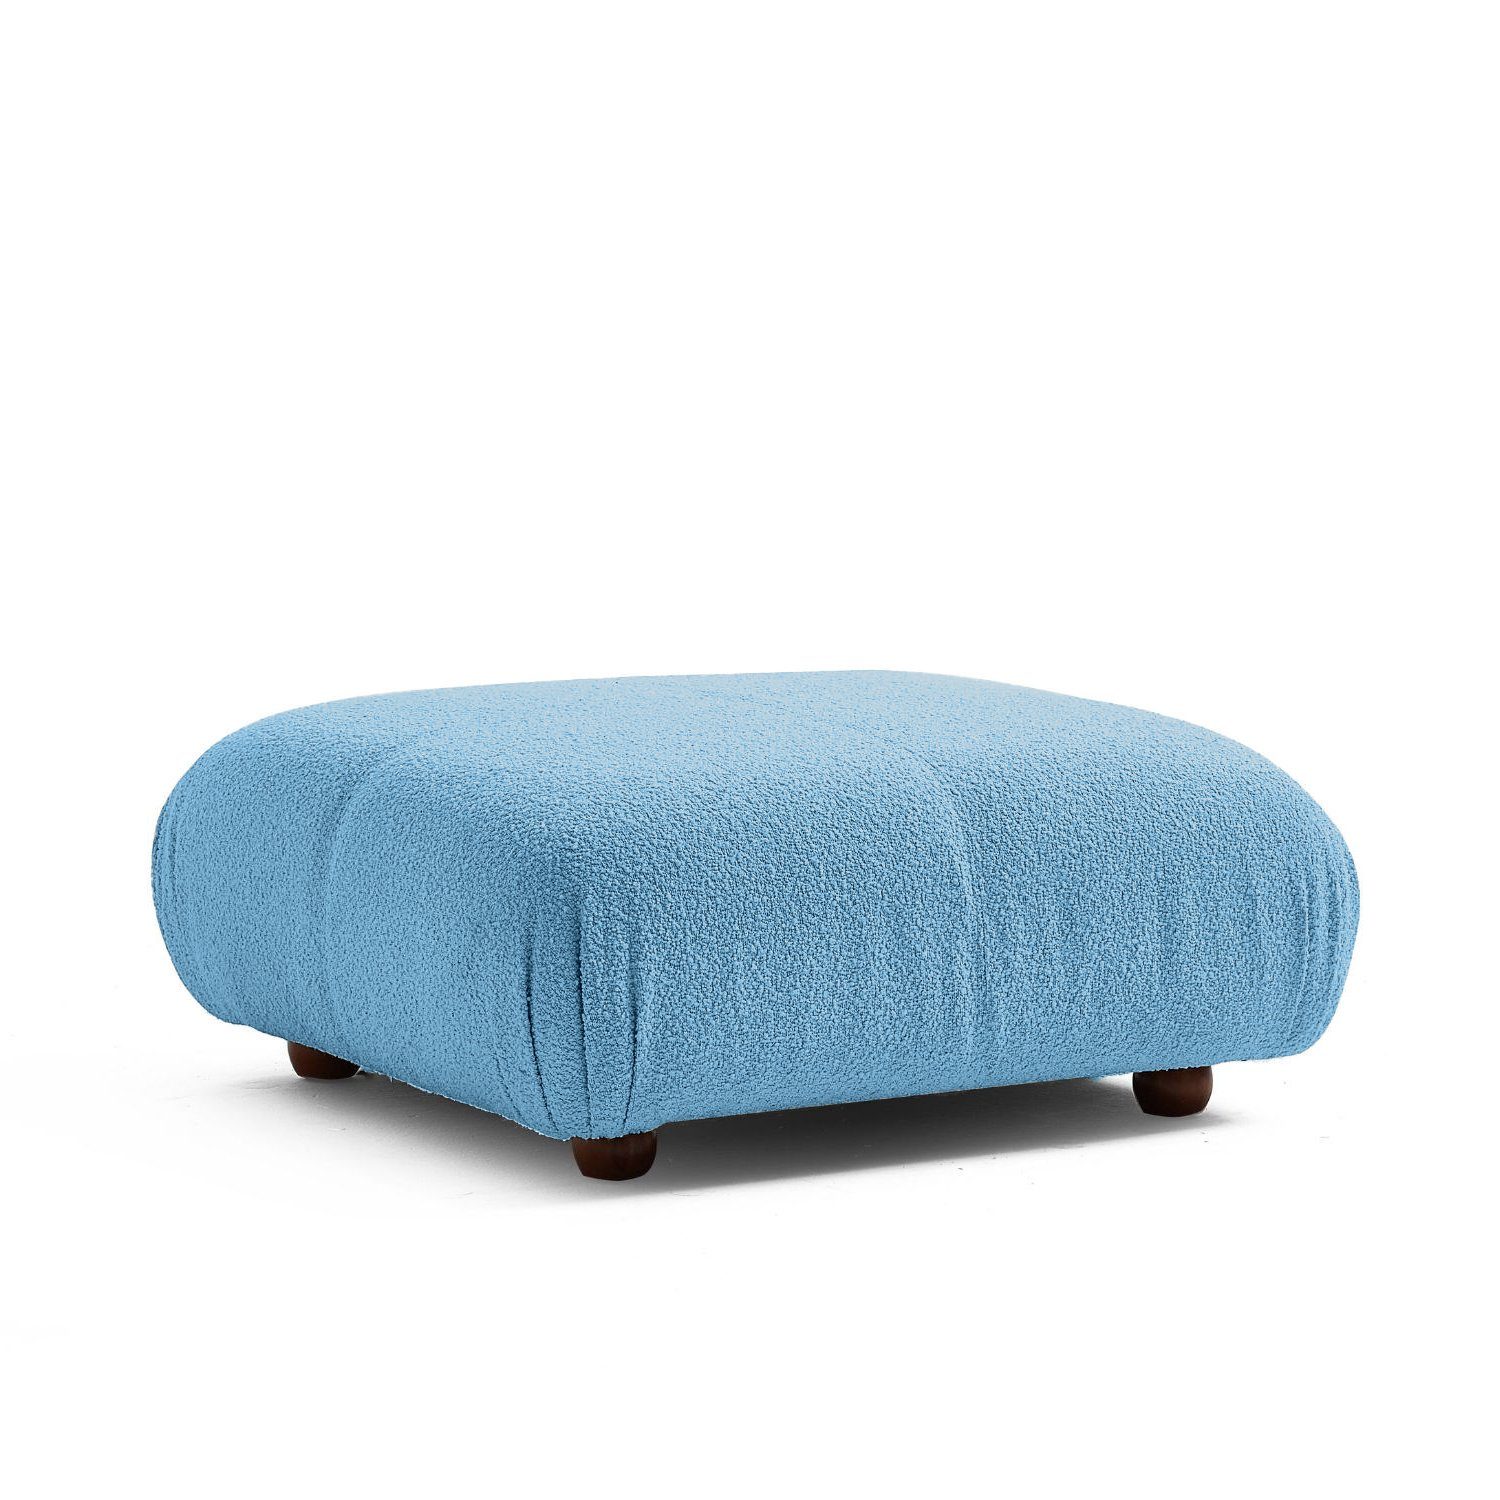 Knuffiges enthalten! Blau-Lieferung neueste Touch aus Preis und Generation Komfortschaum im Sofa me Aufbau Sitzmöbel